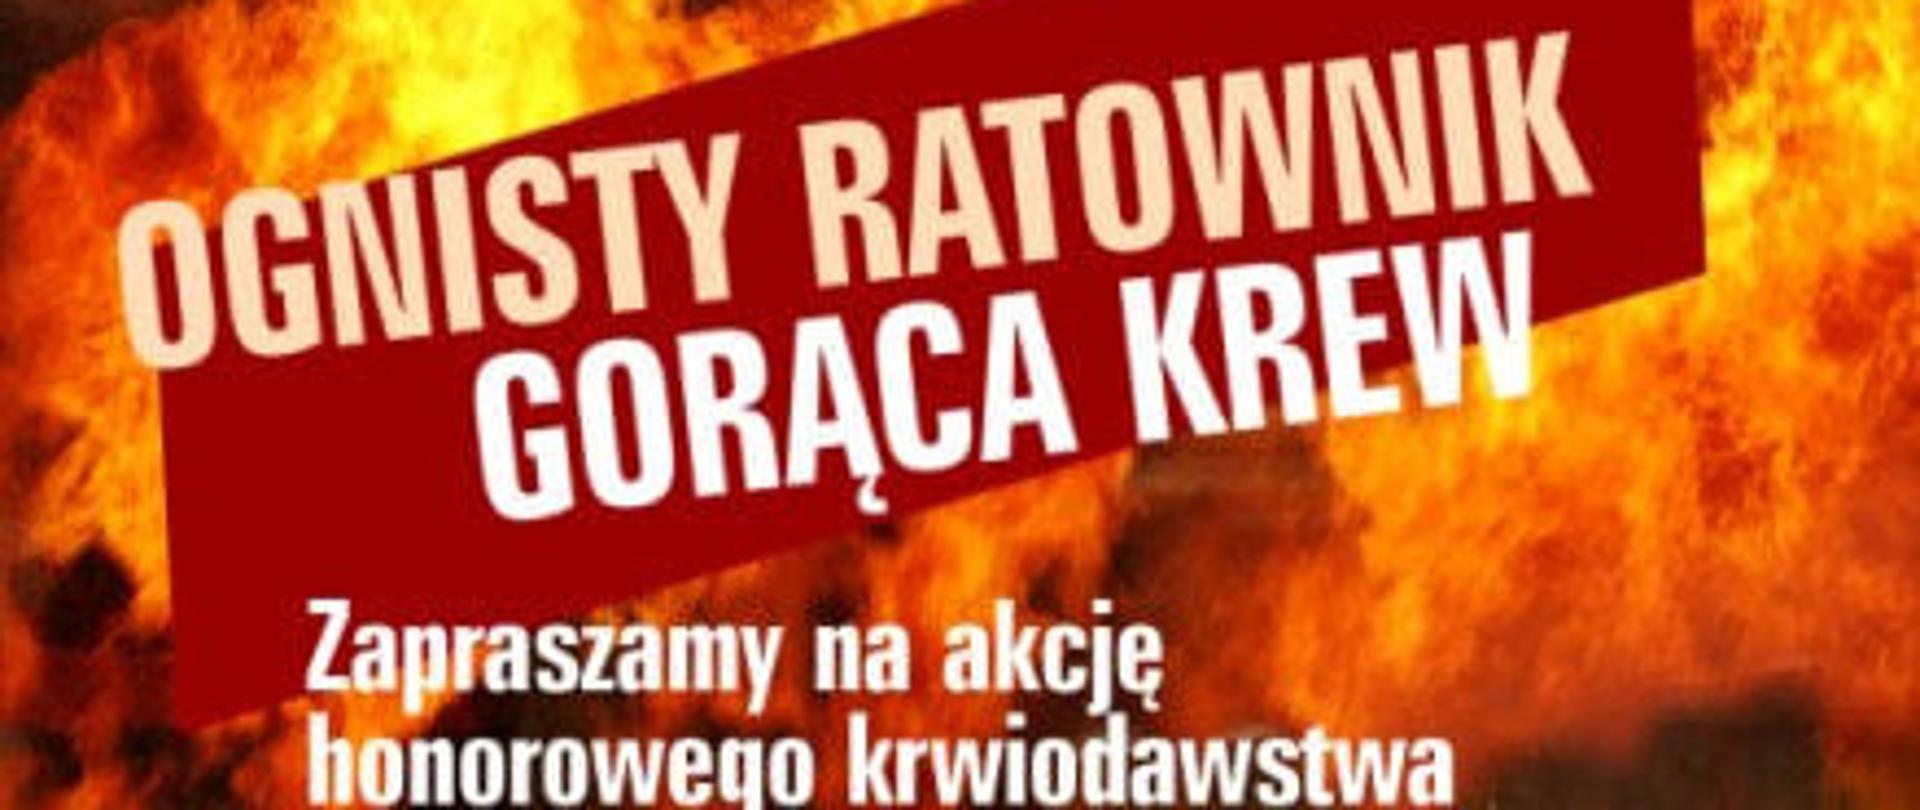 Logo akcji Ognisty Ratownik - Gorąca Krew.